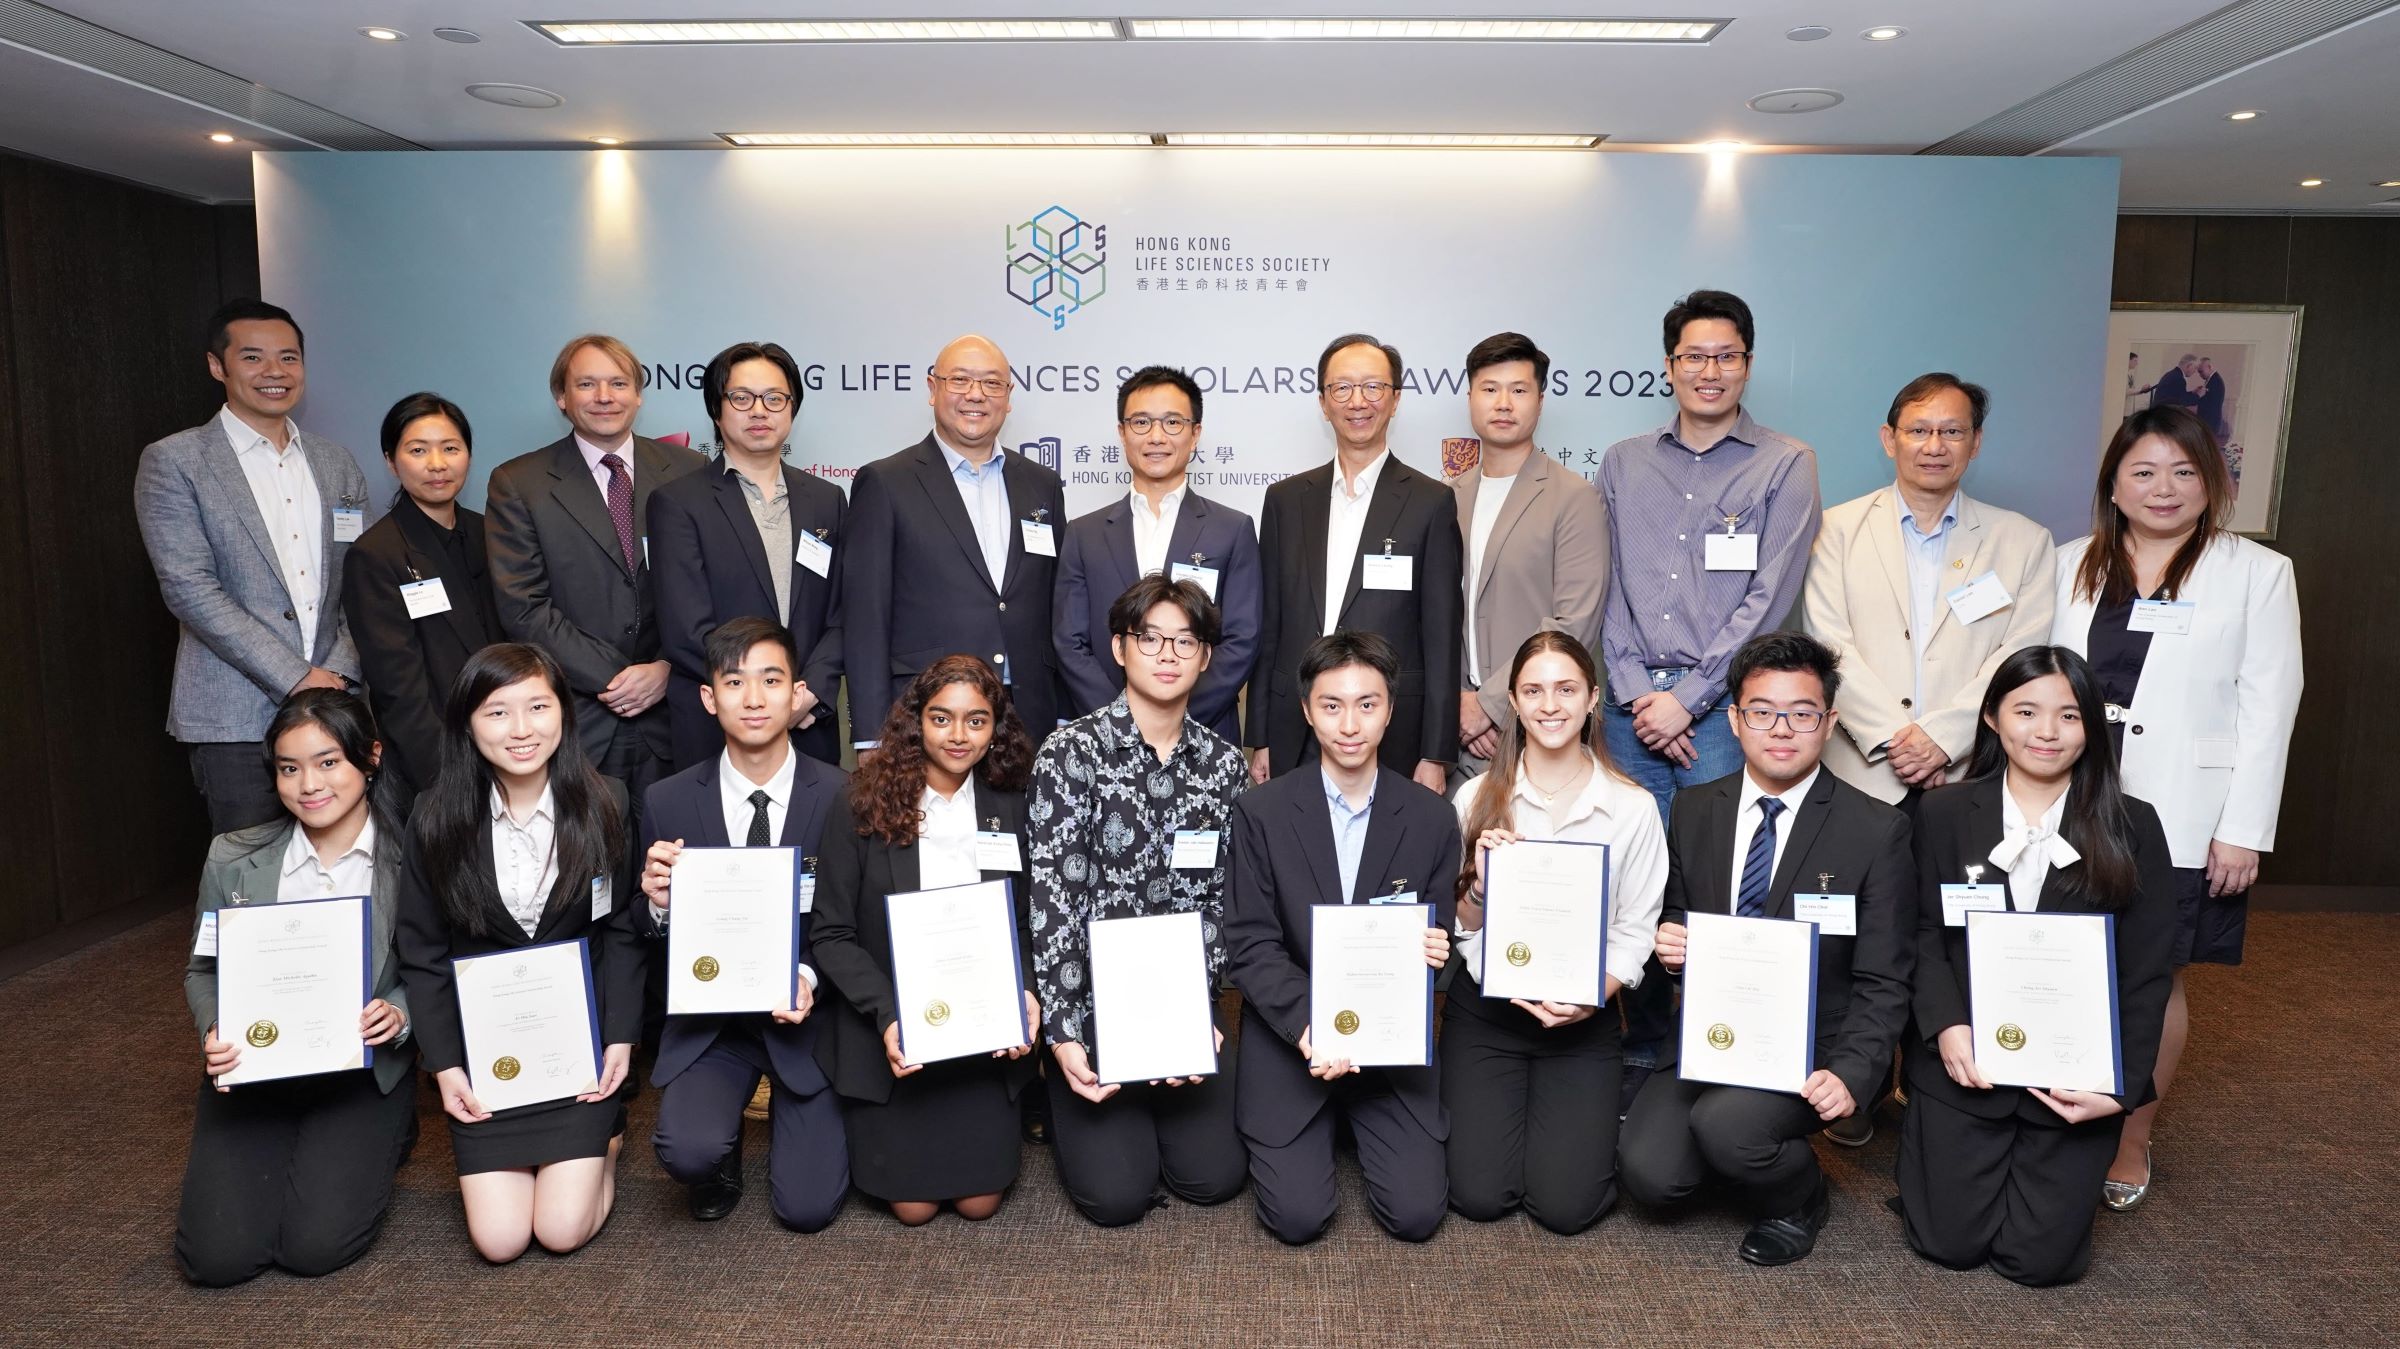 Hong Kong Life Sciences Scholarship Awards 2023/24 - Mr Vincent Cheung, Mr Charles Ng, guests and awardees